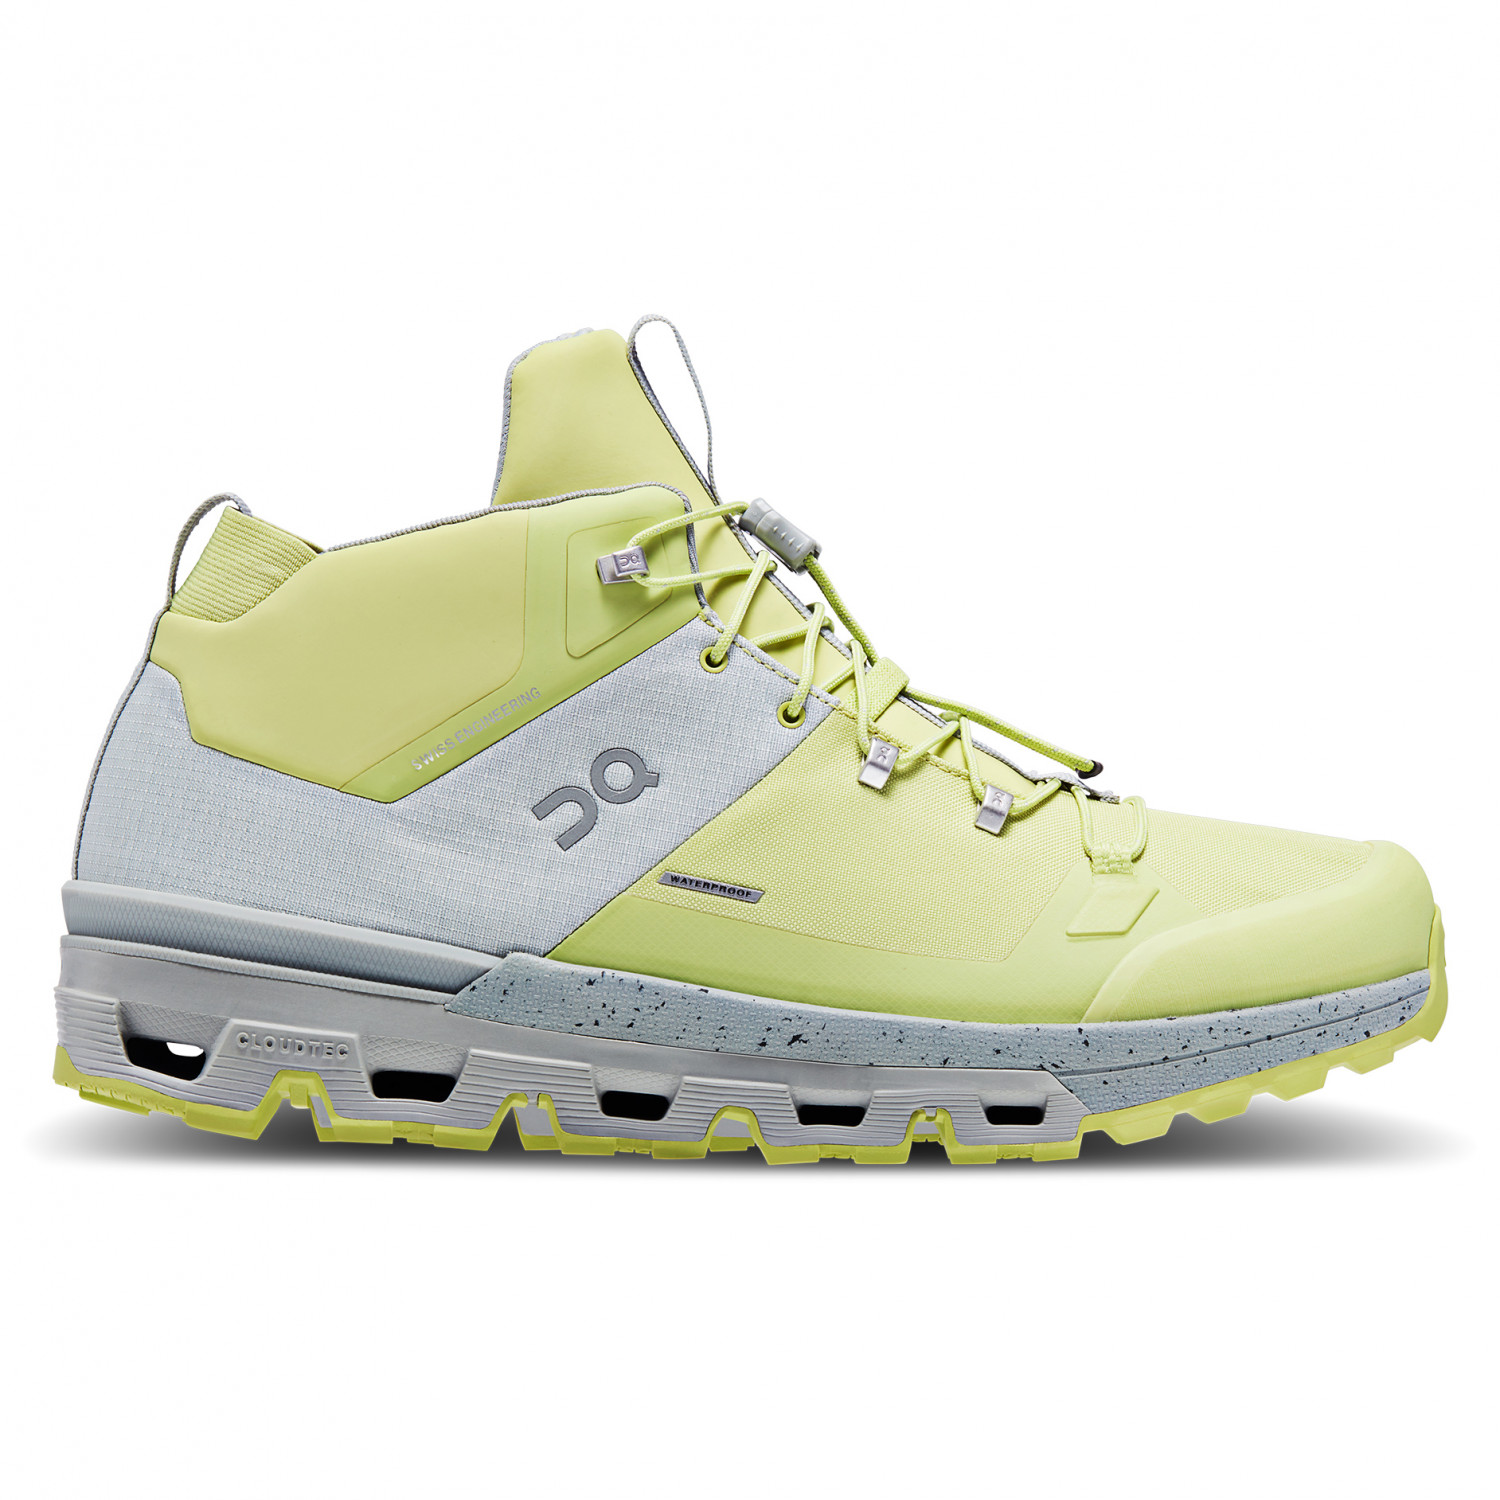 Ботинки для прогулки On Women's Cloudtrax Waterproof, цвет Glacier/Zest